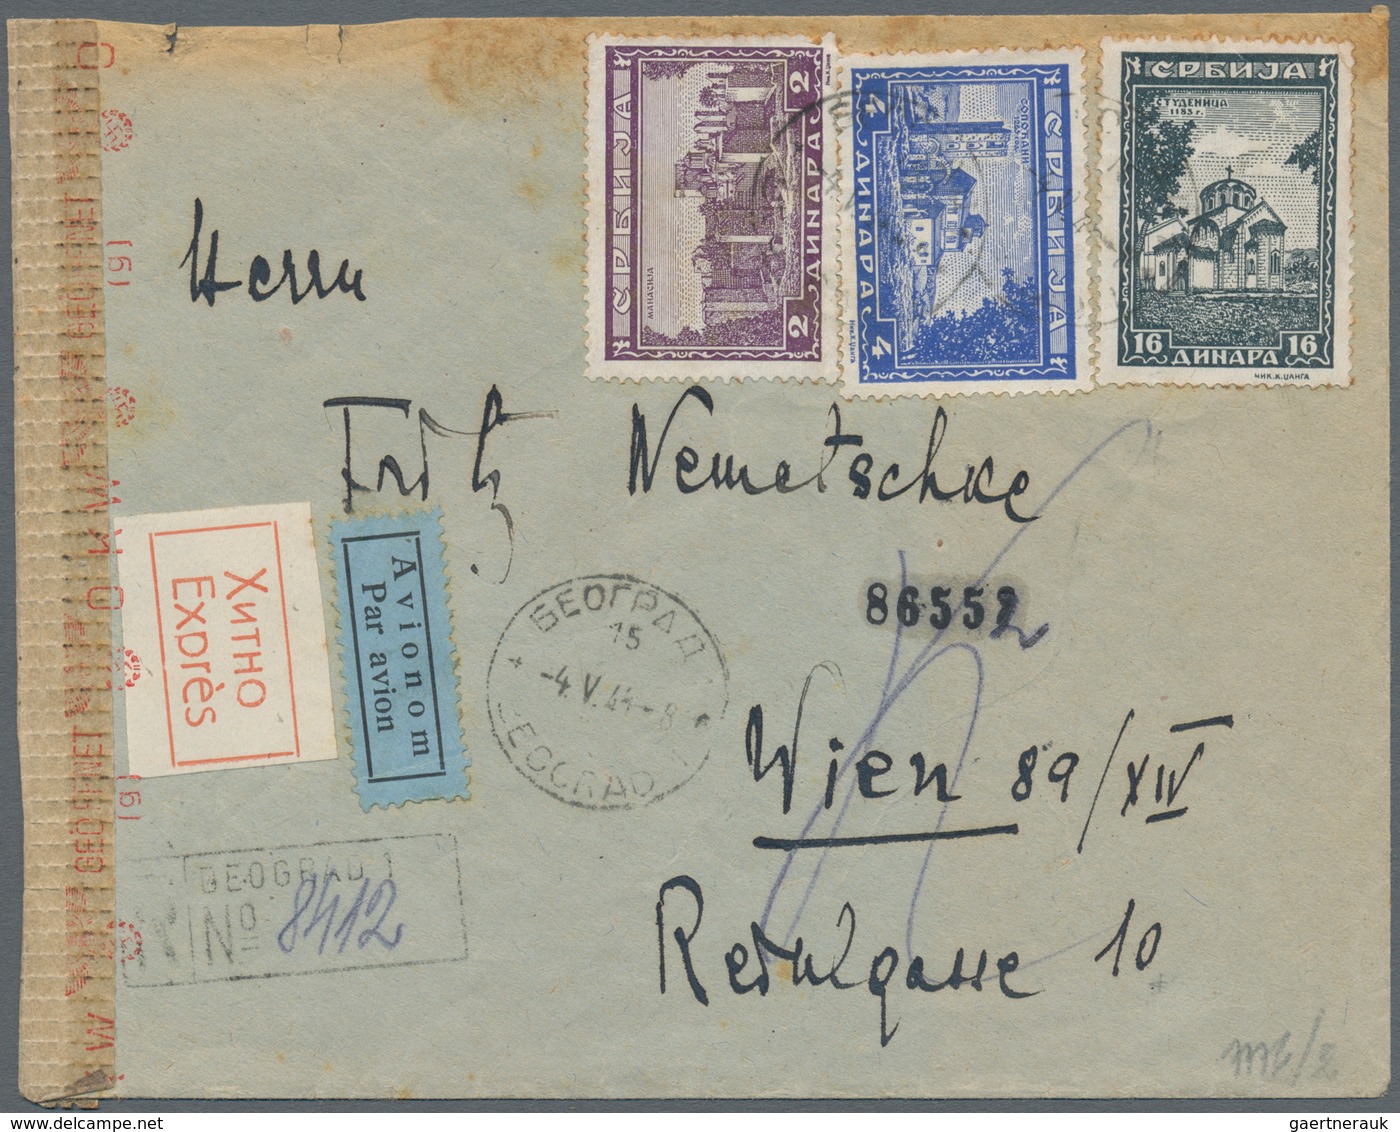 Serbien: 1865/1944 interessante Partie meist besserer Stücke, dabei Briefe, Ganzsachen, Einheiten un